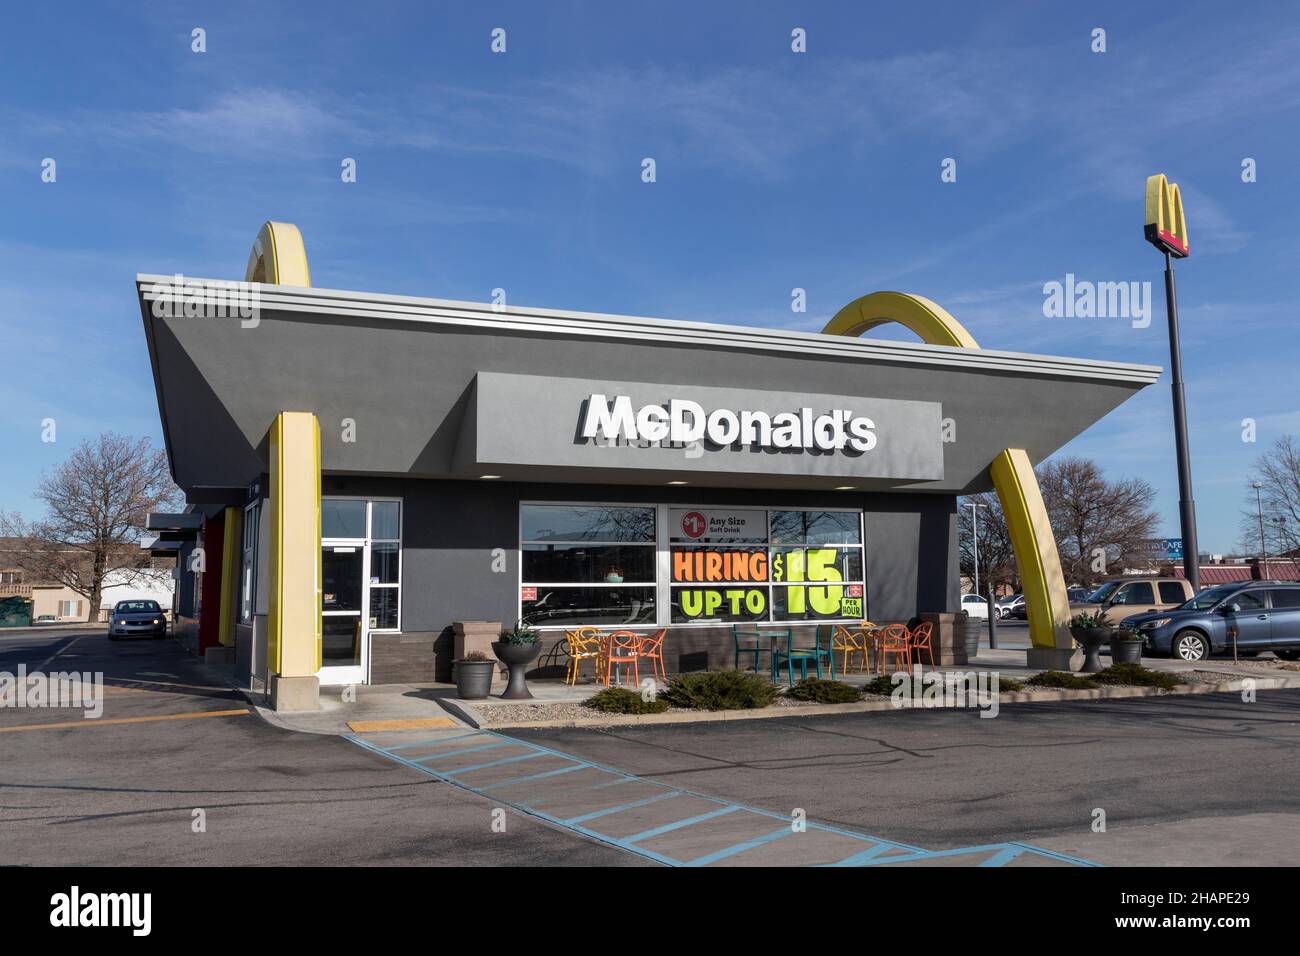 Lafayette - Circa décembre 2021 : restaurant McDonald's.McDonald's offre aux employés un salaire horaire plus élevé, des congés payés, des services de garde d'enfants et une assurance-vie Banque D'Images